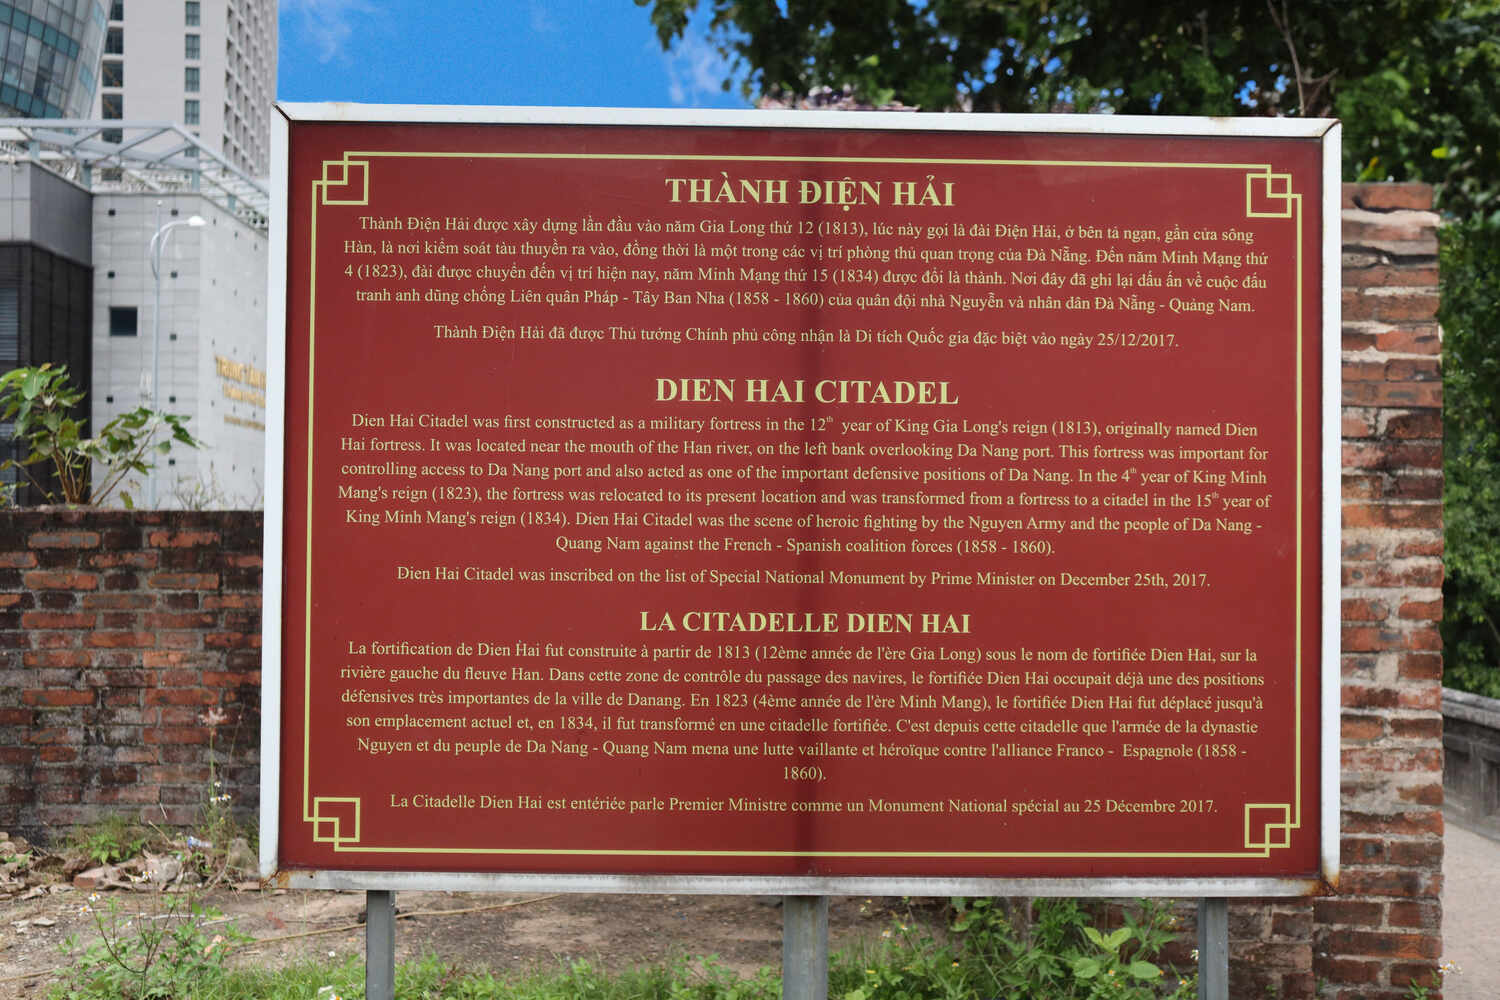 Signs of Dien Hai Citadel in Da Nang